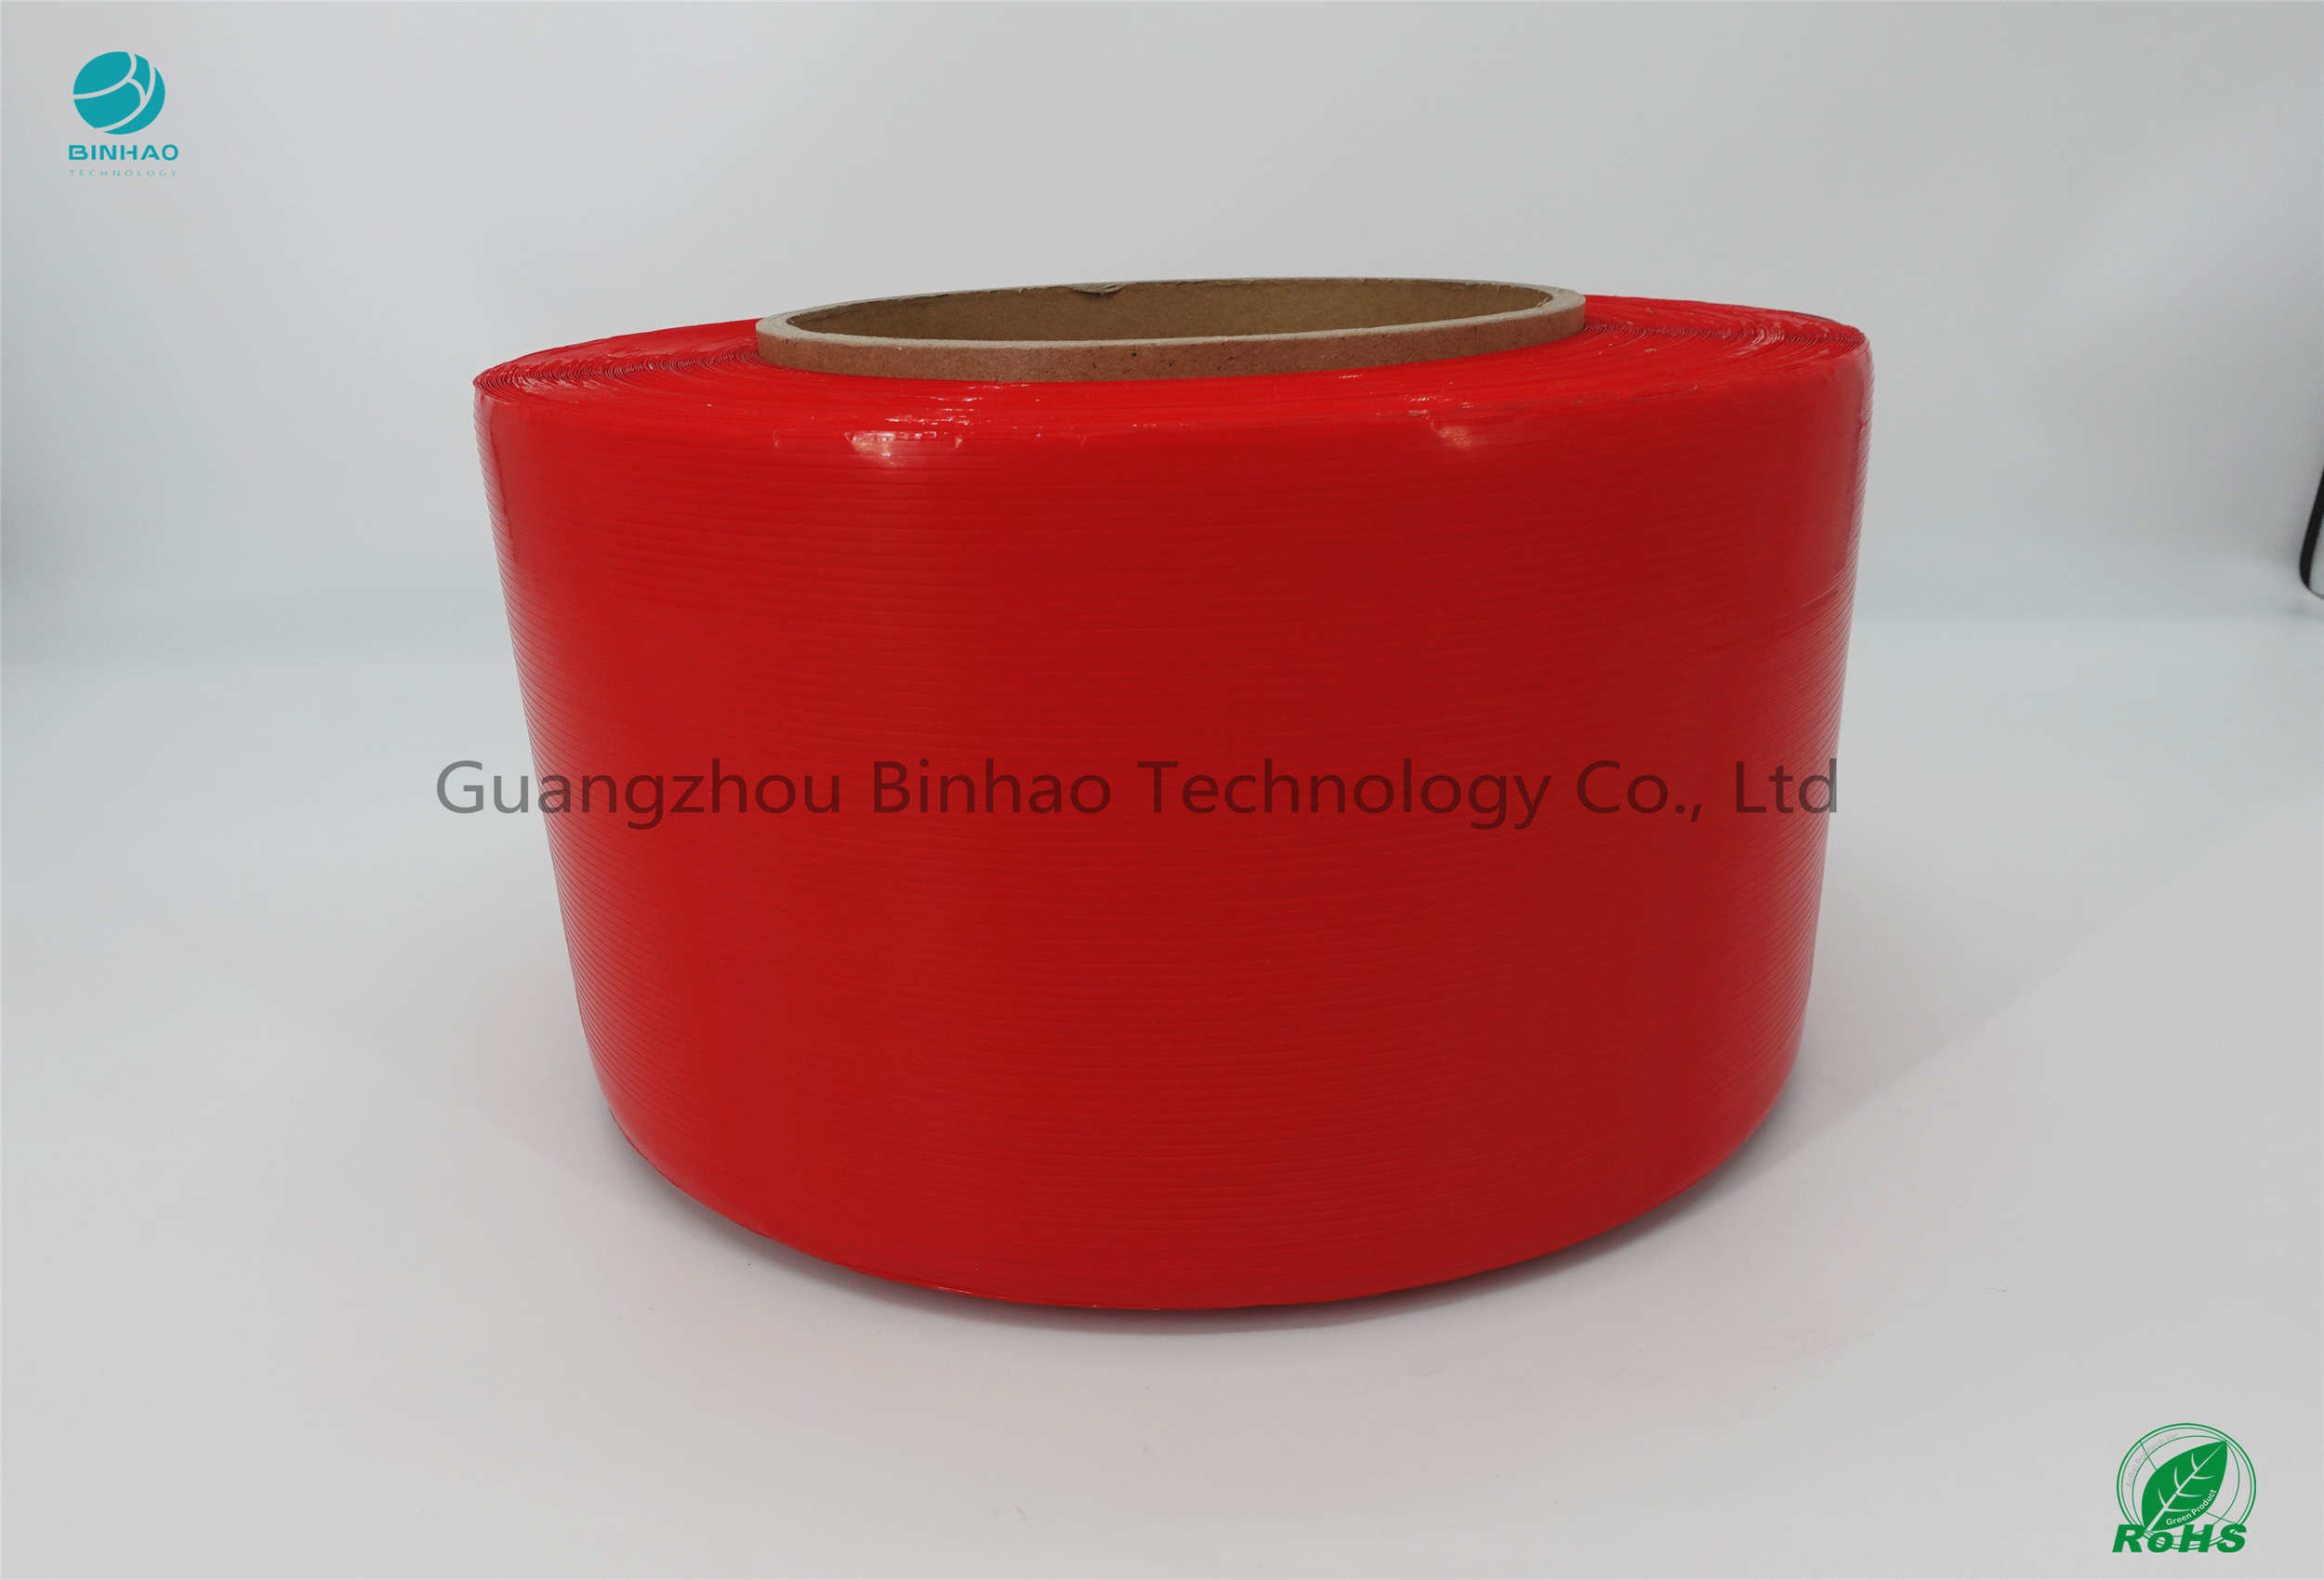 مواد MOPP الشريط المسيل للدموع سهلة اللون الأحمر 5 مم العرض 152 مم الداخلية الأساسية